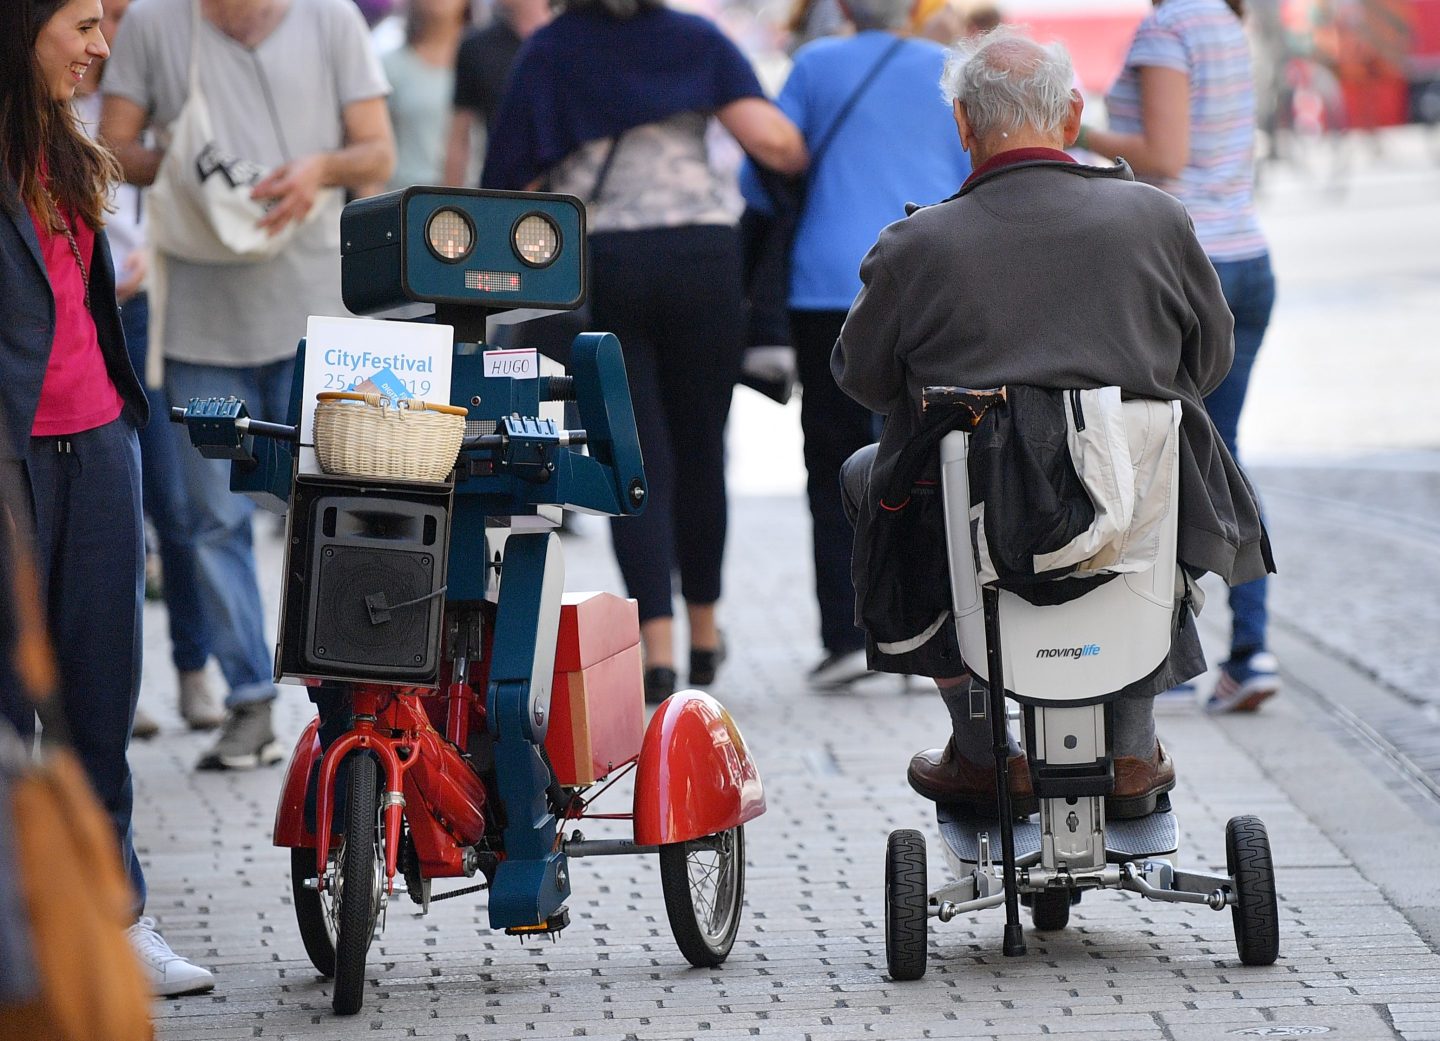 A talking robot at Thüringen Digital festival in Erfurt, Germany.